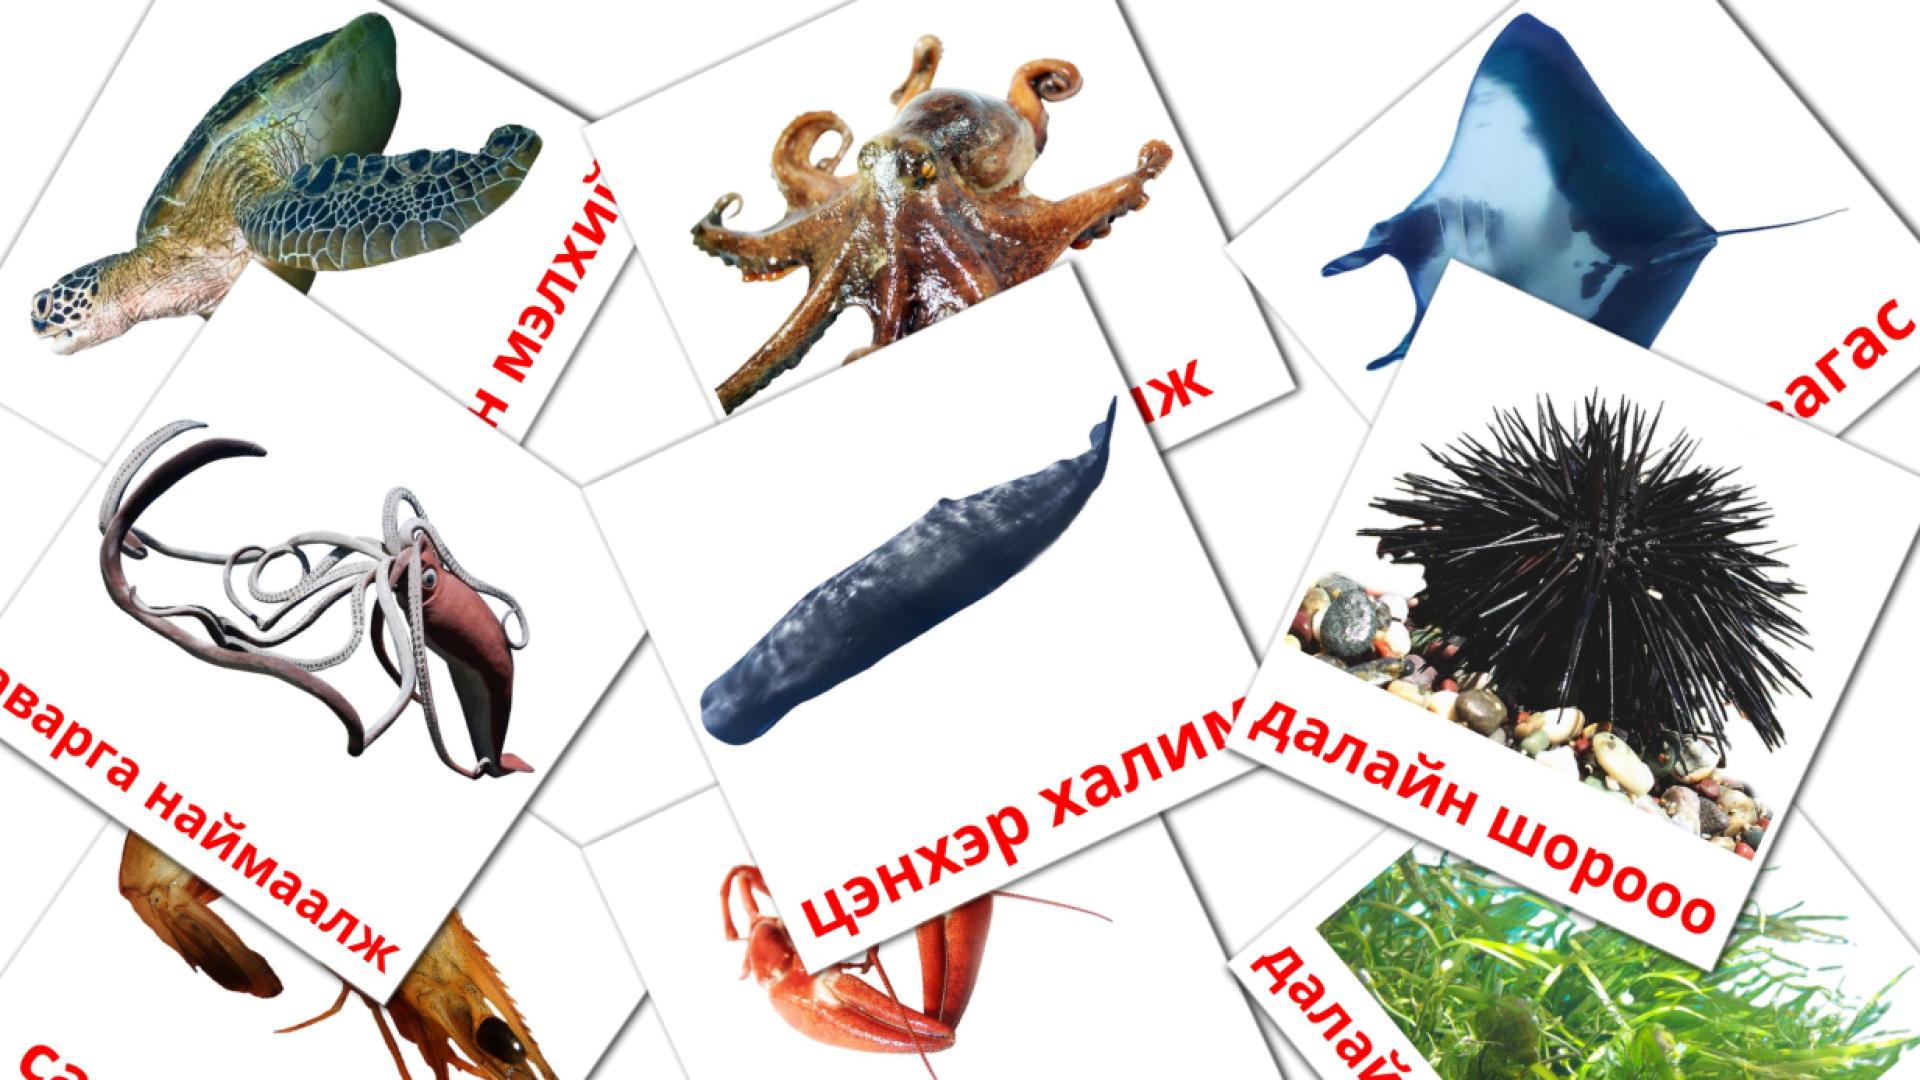 Bildkarten für далайн амьтад